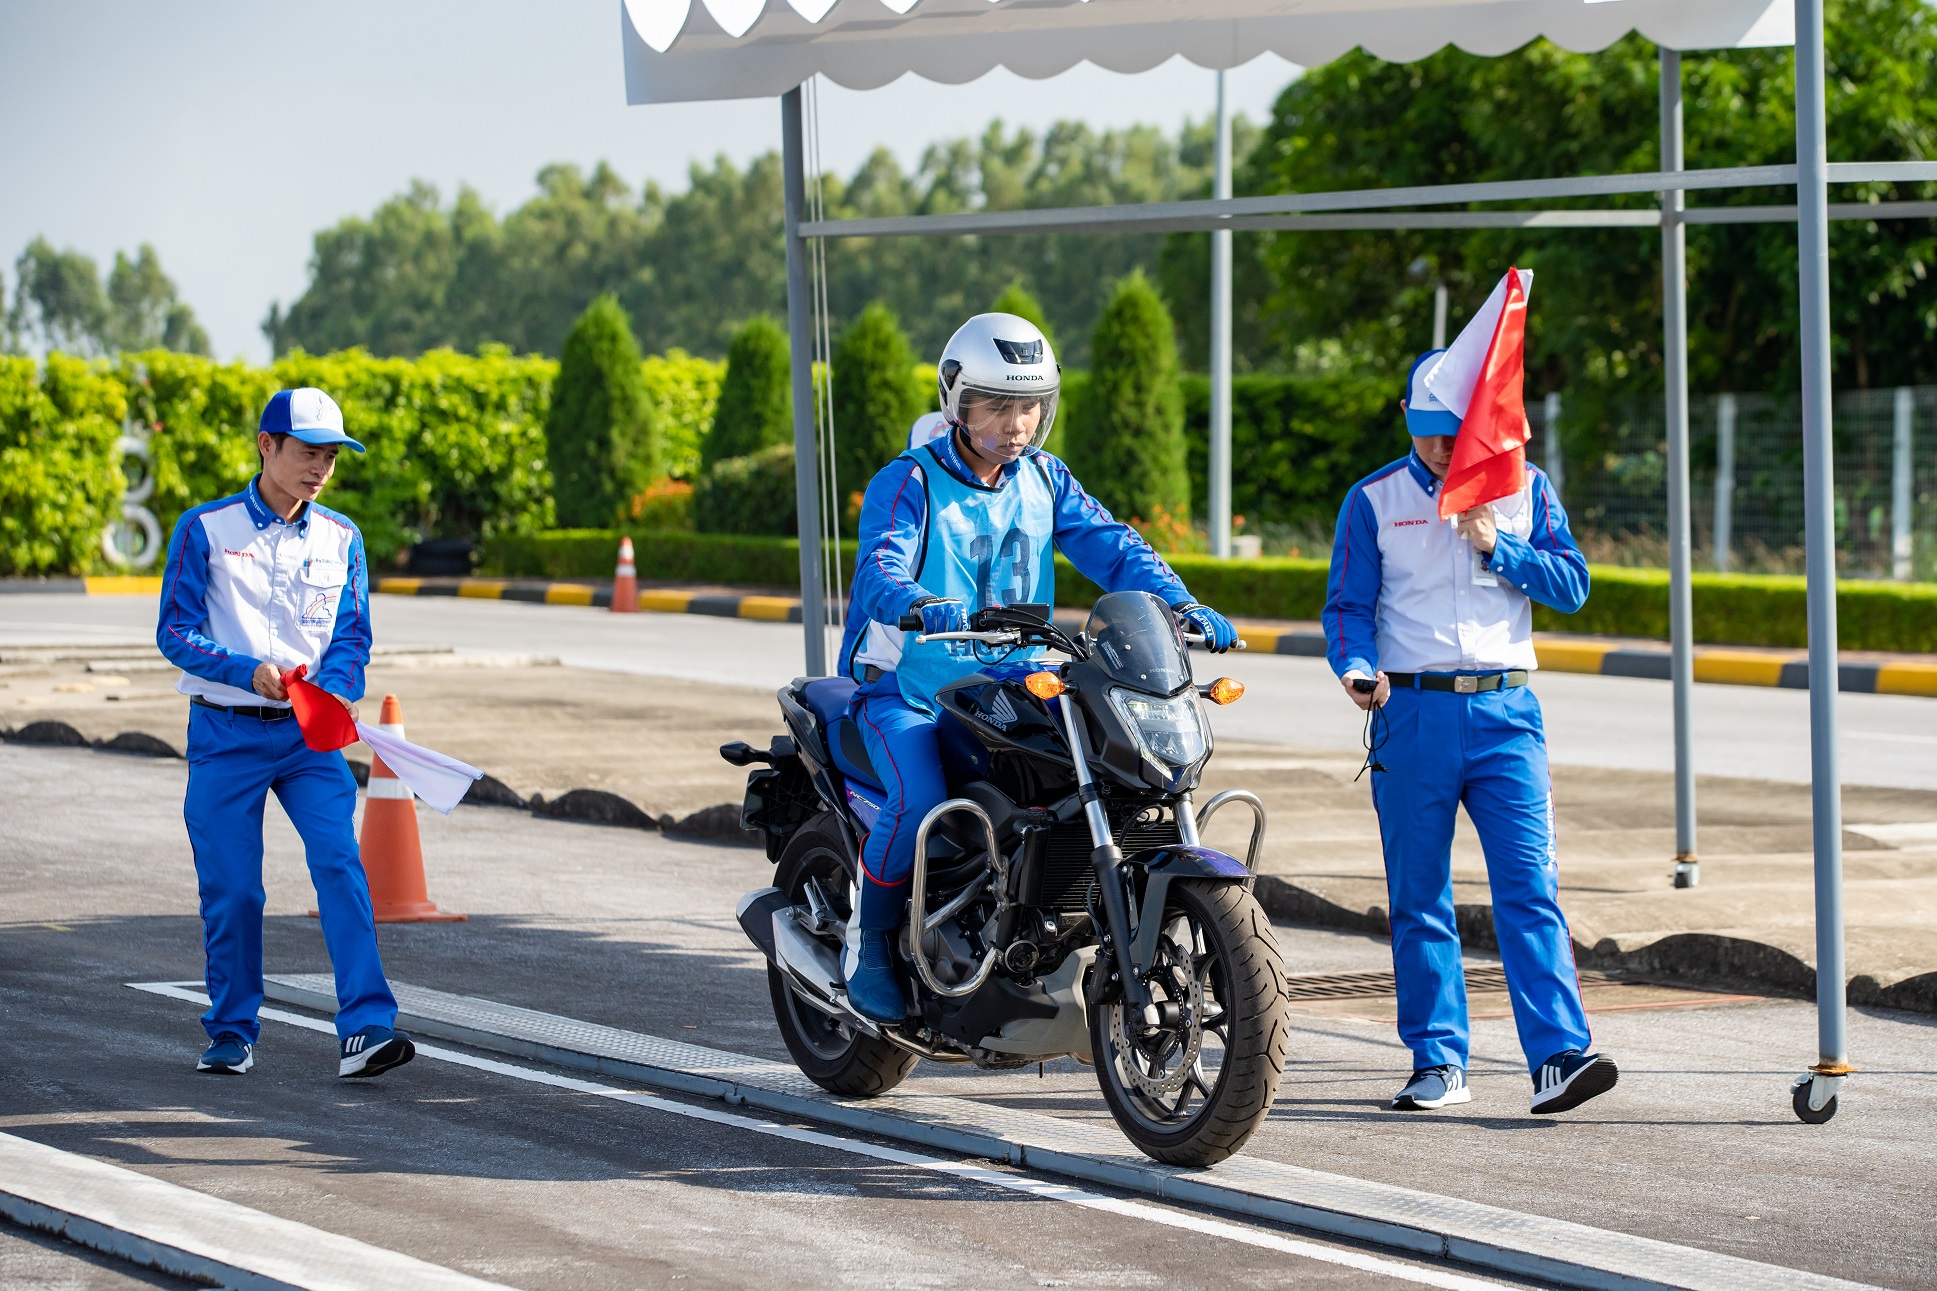 Honda Việt Nam triển khai chương trình khuyến mại ‘Chinh phục bằng A2 - Chiếm lĩnh mọi hành trình’ honda-chinh-phuc-bang-a2-5.JPG